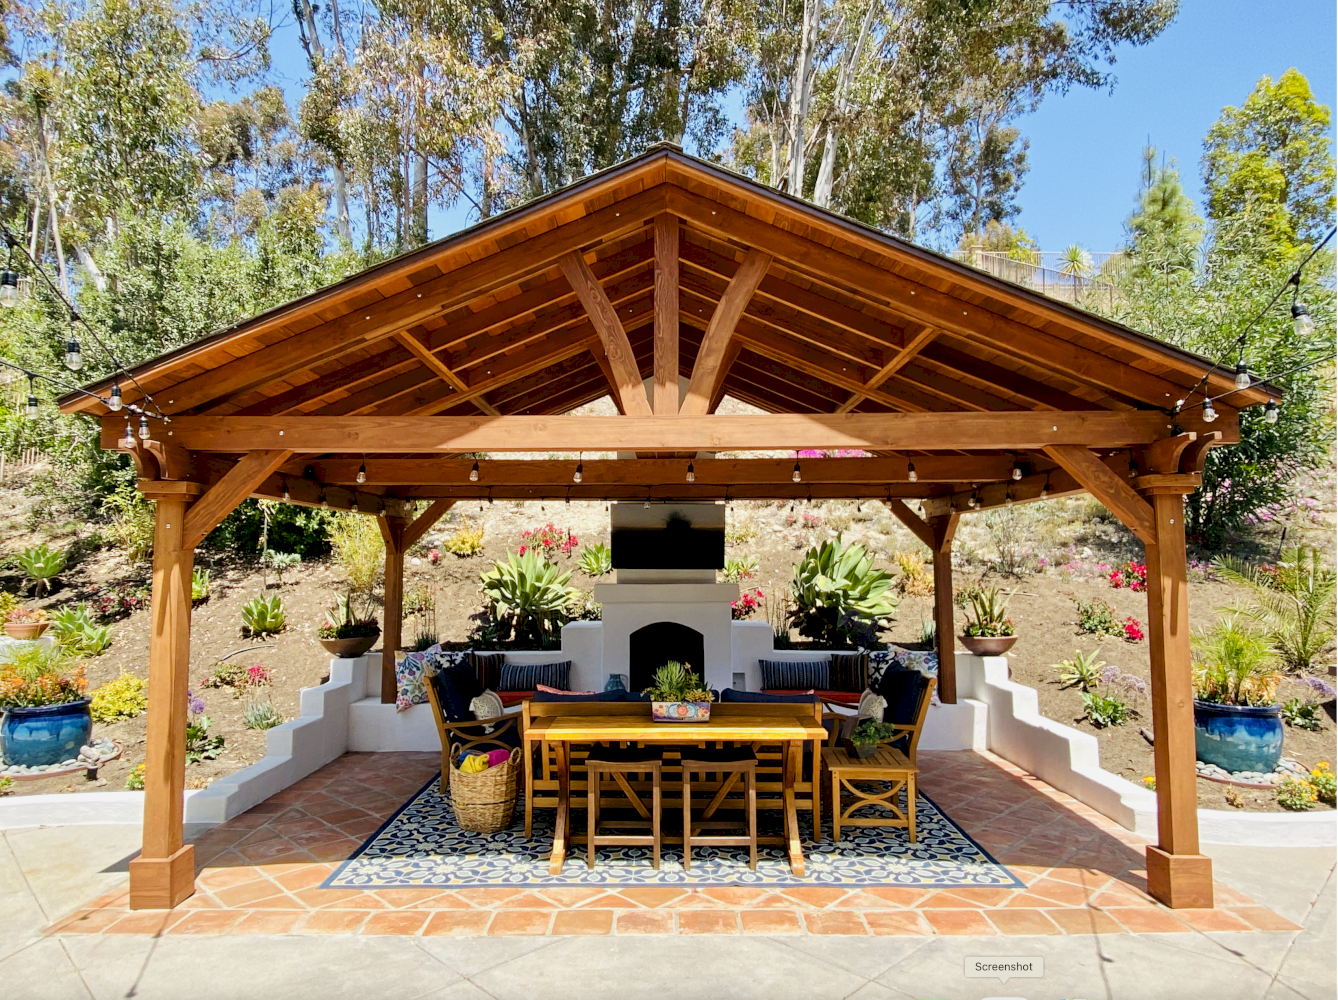 Del Norte Outdoor Kitchen Pavilion - San Diego, CA